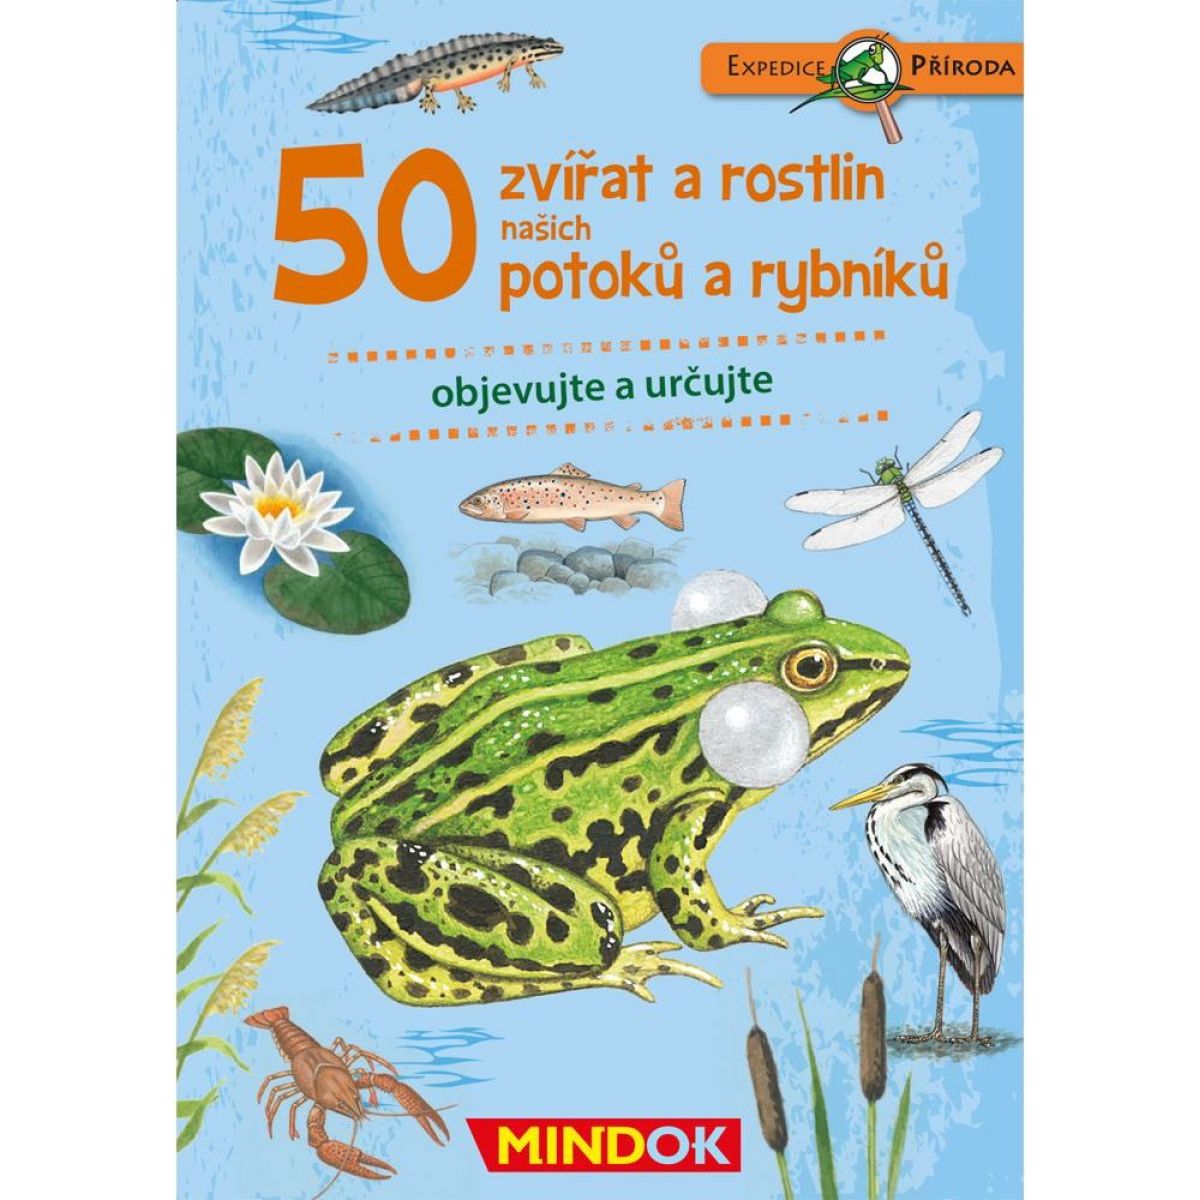 Mindok Expedice příroda 50 zvířat a rostlin potoků a rybníků